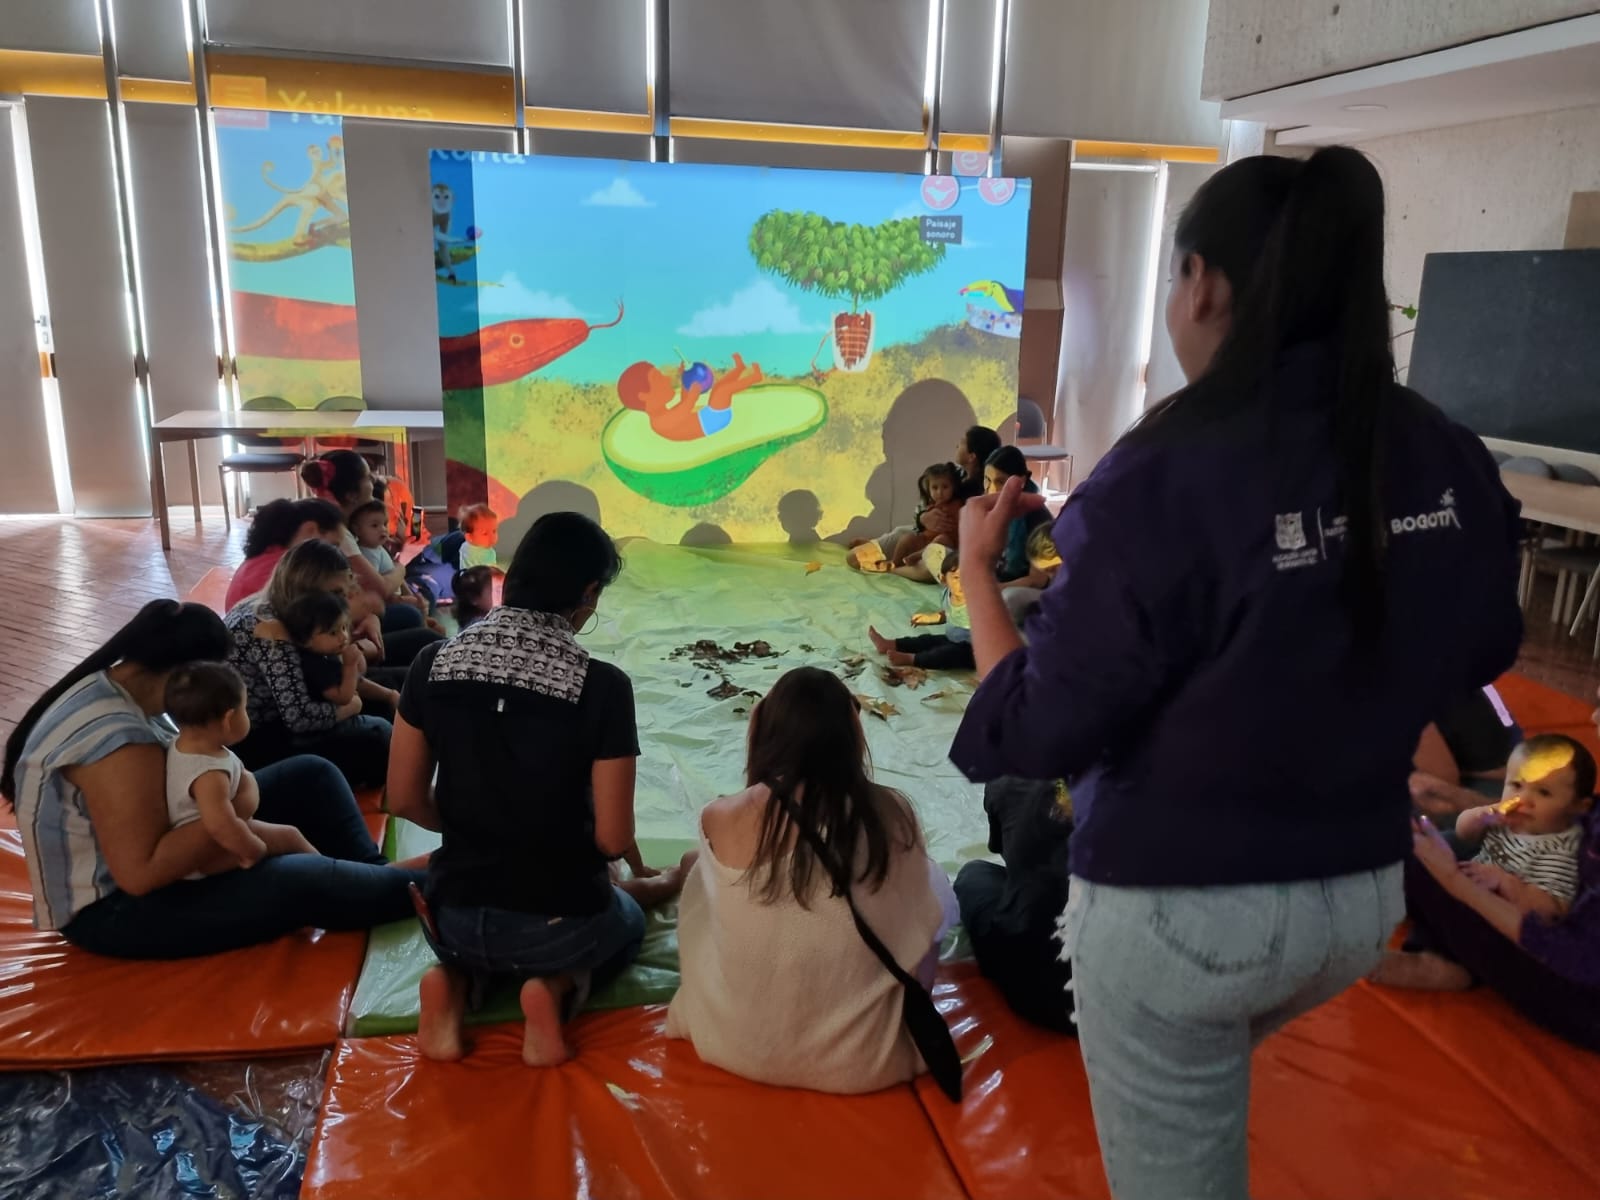 niñas y niños viendo la proyección de un video animado